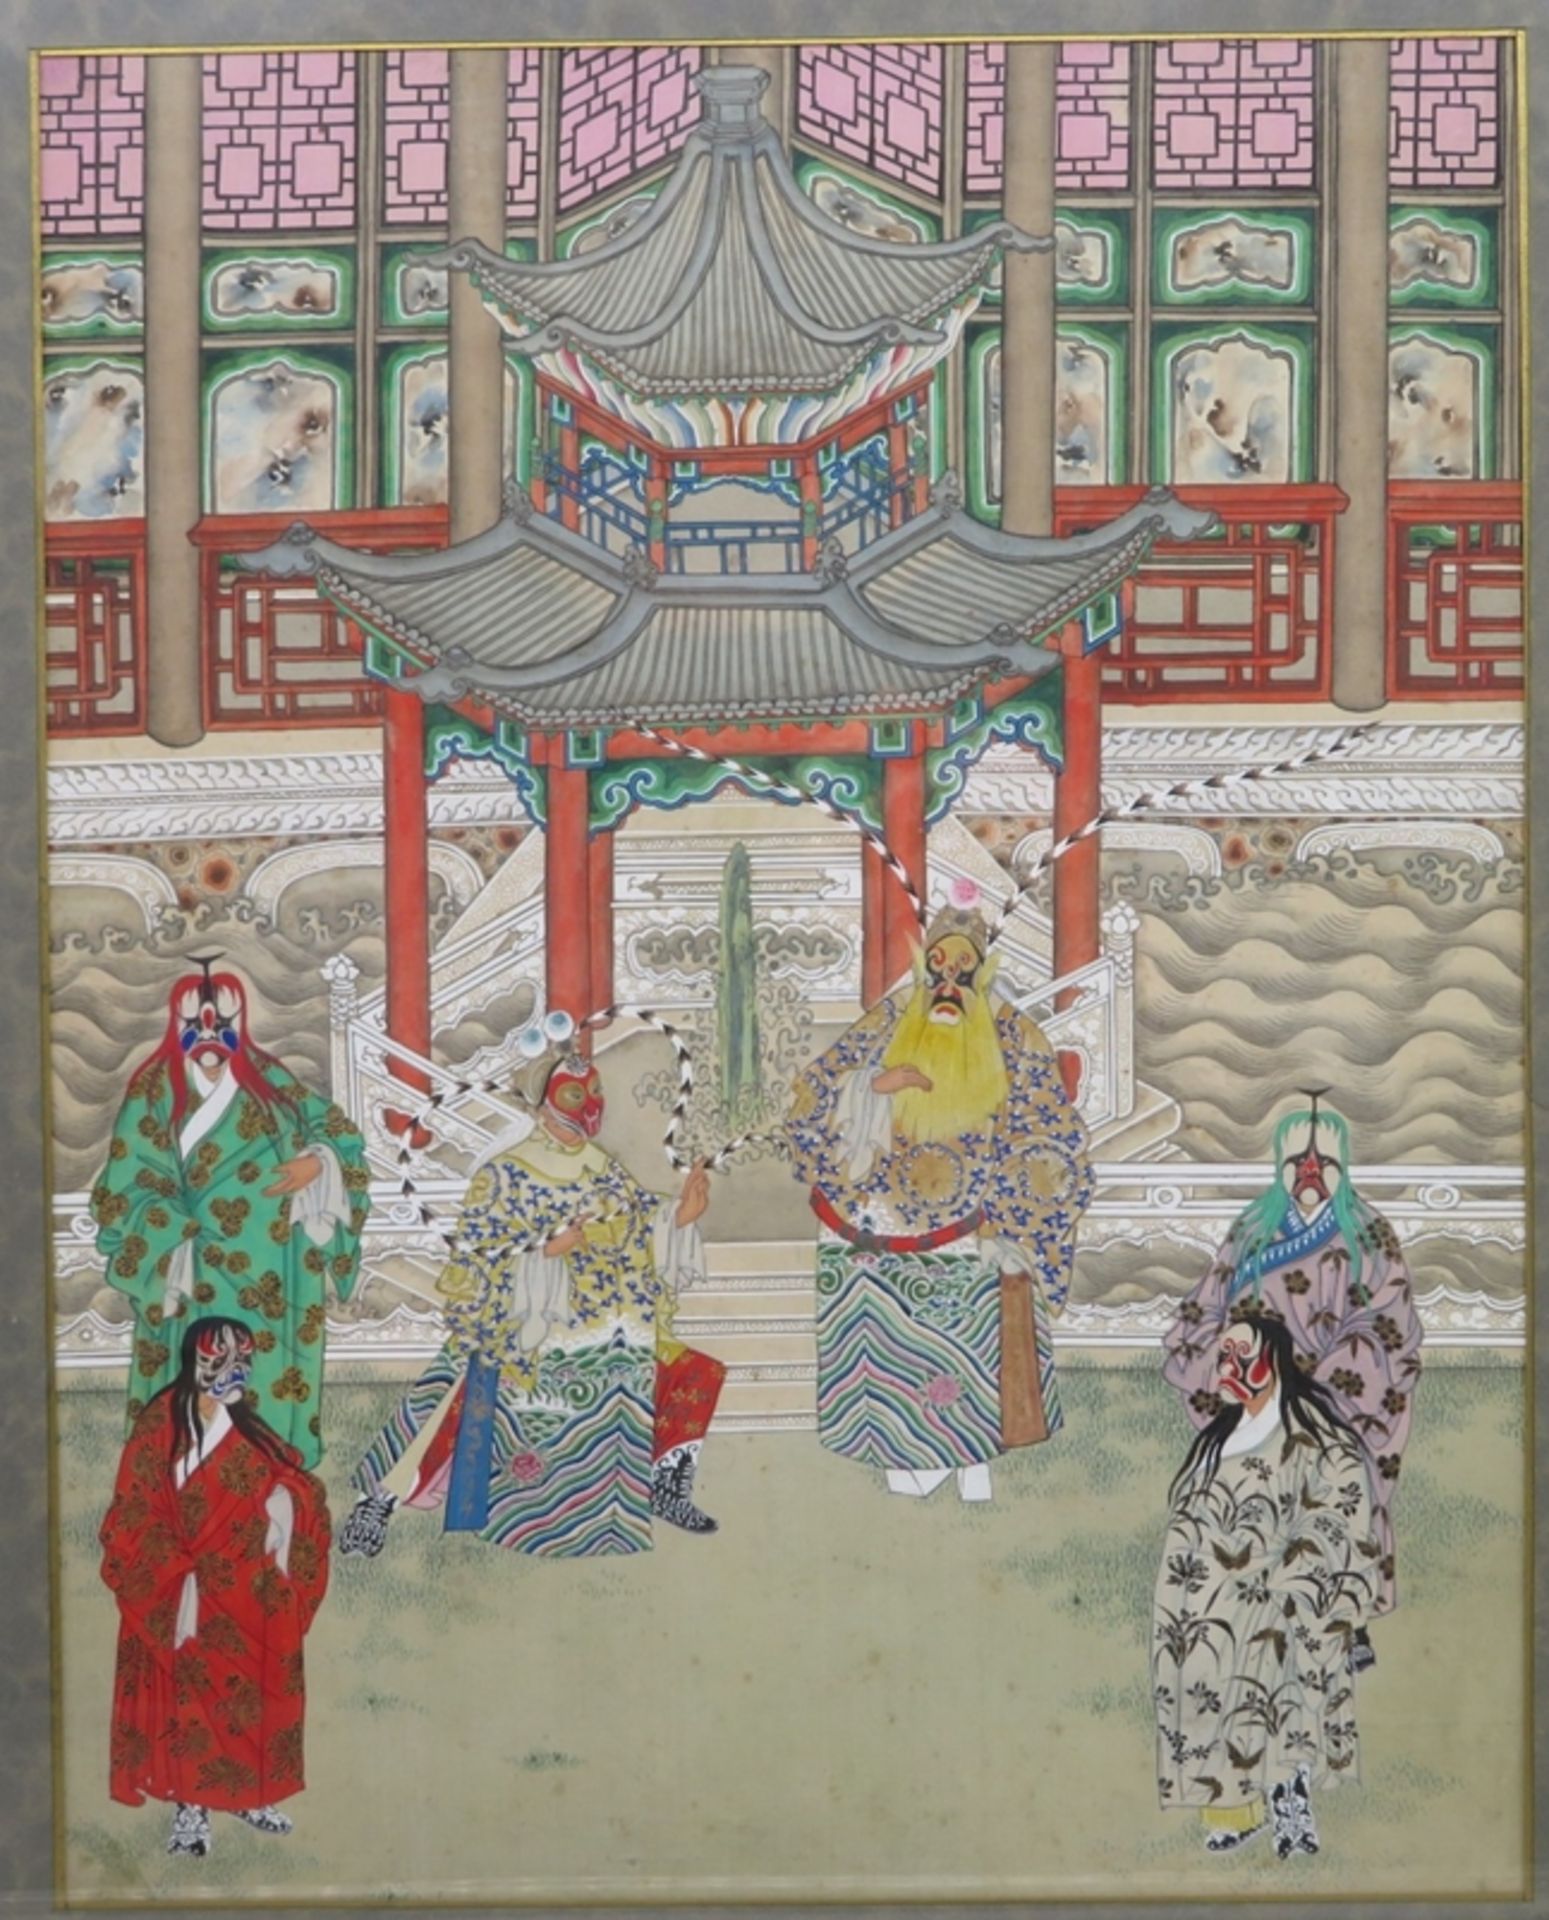 Feine Seidenmalerei, China, um 1900, "Opernschauspieler", verso beschrieben, 34 x 27 cm, R. [52 x 4